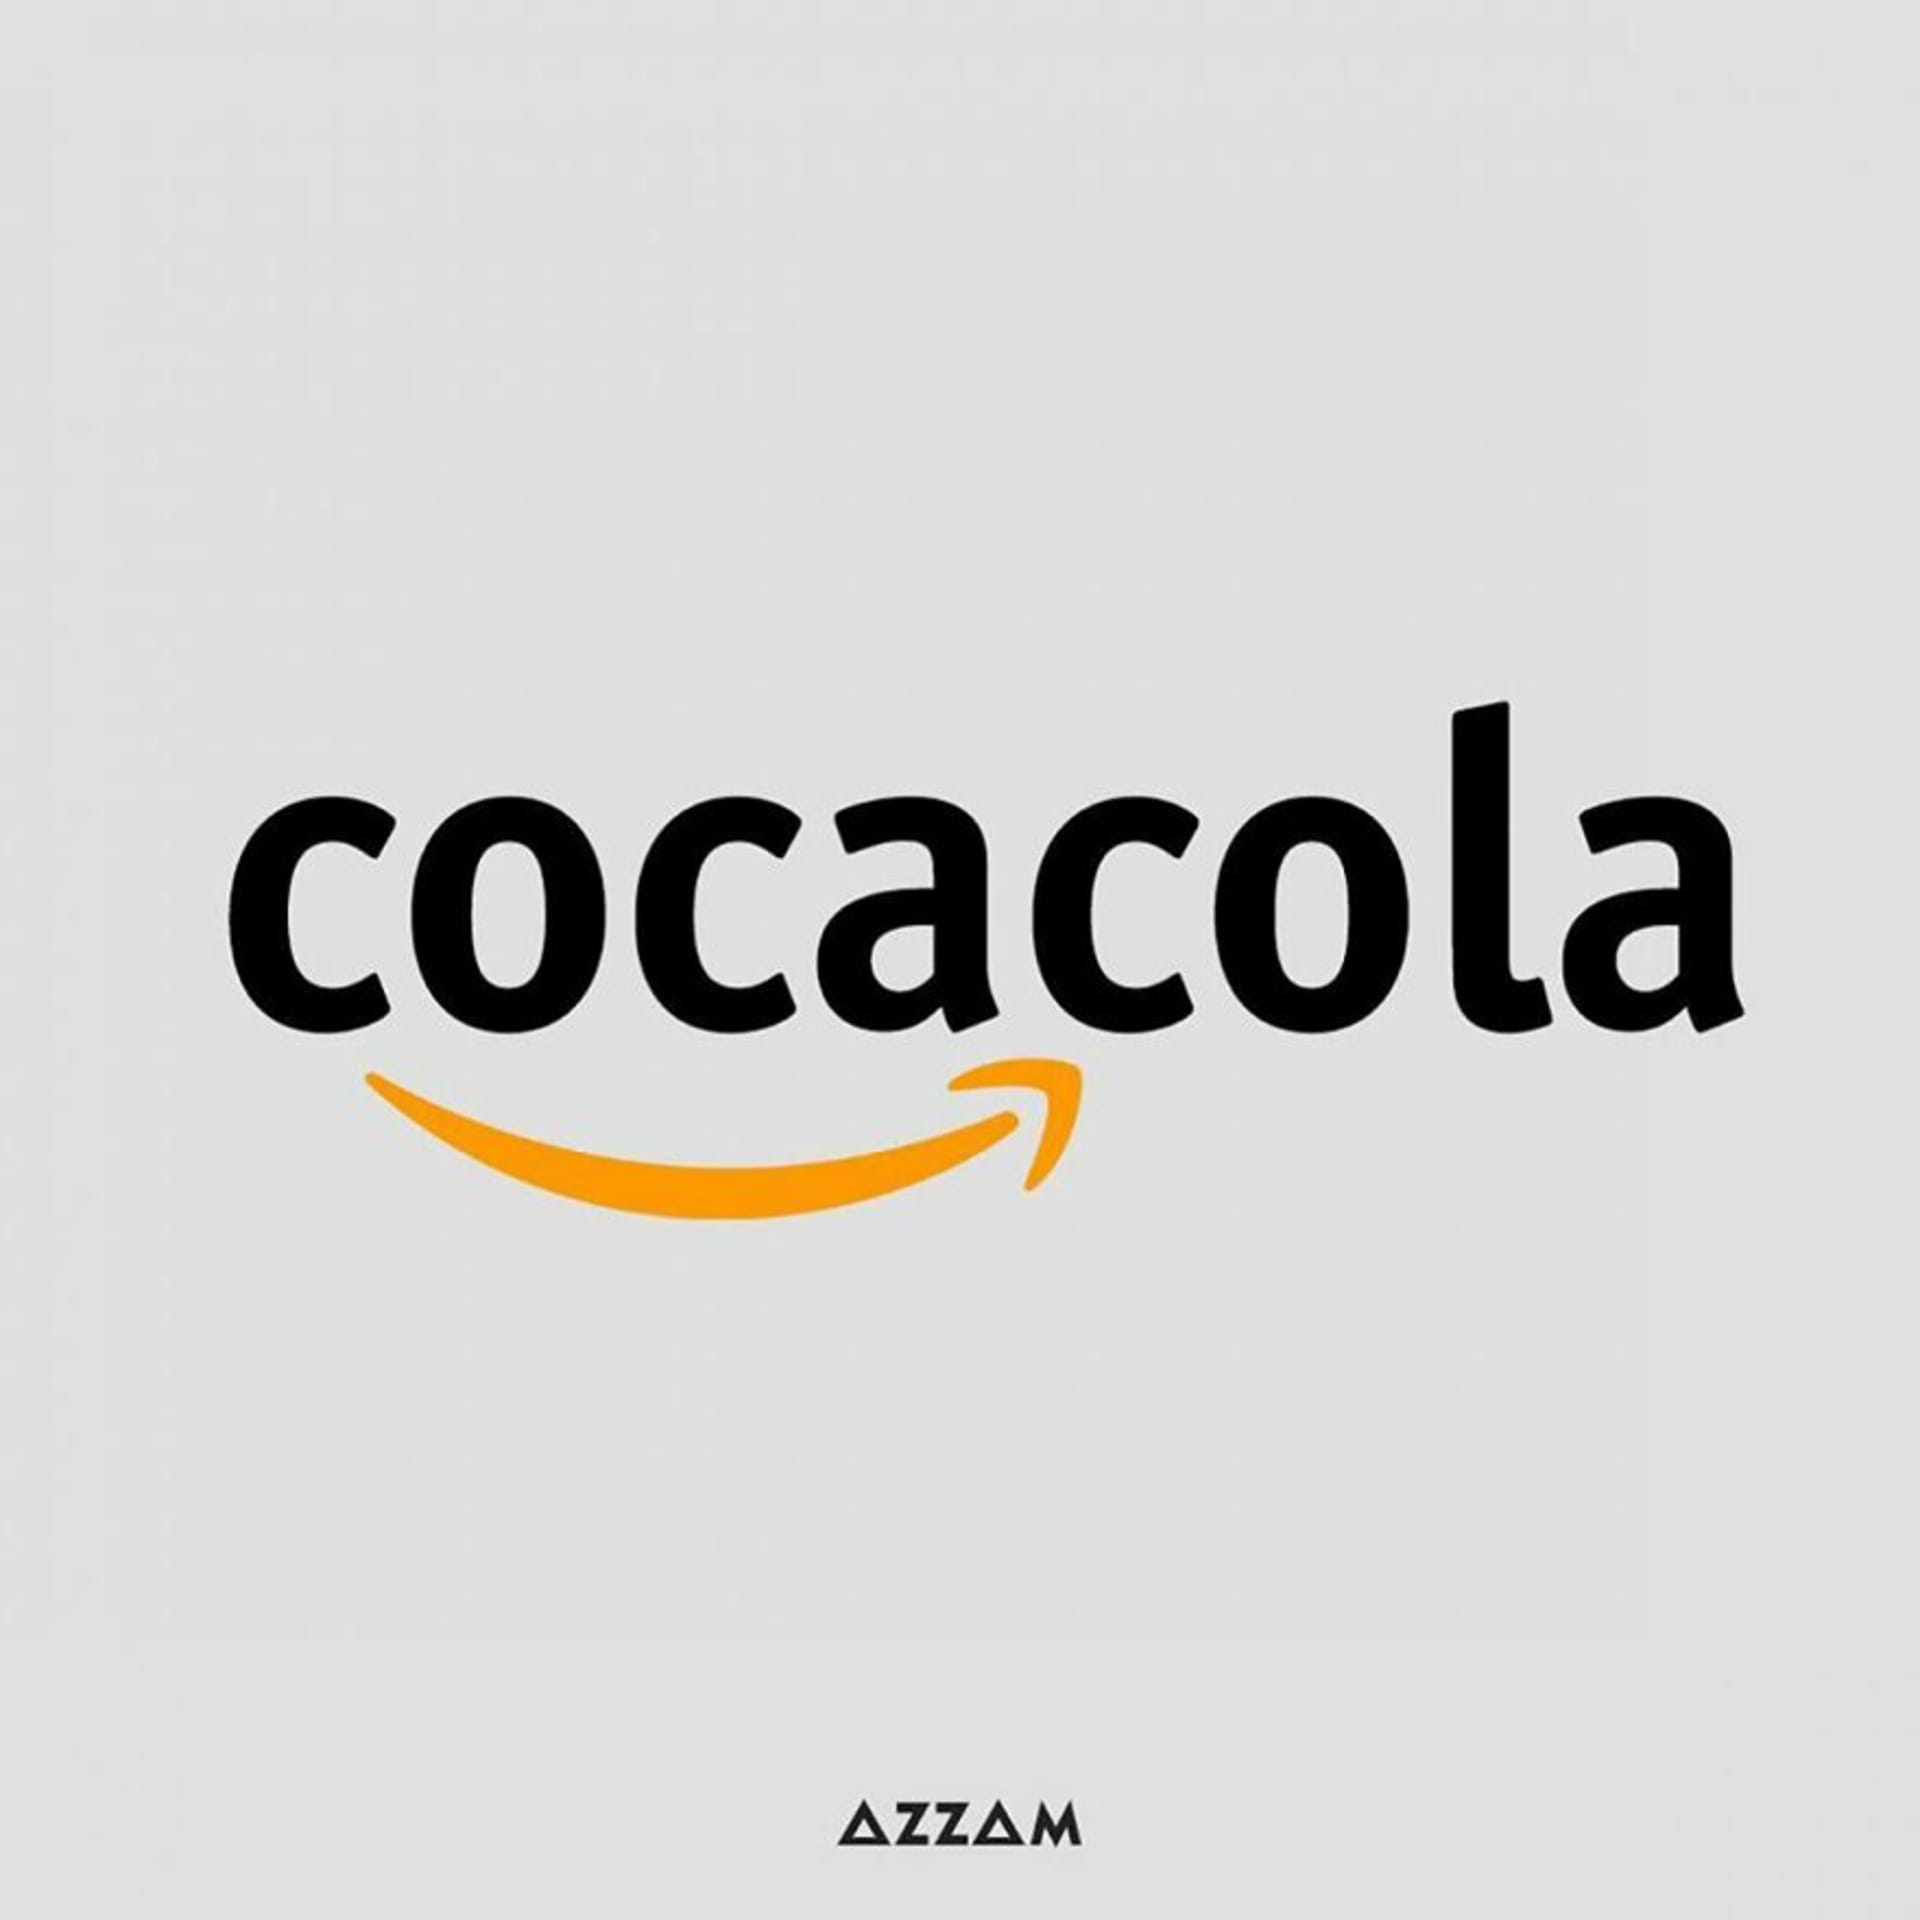 Amazon X Coca-Cola